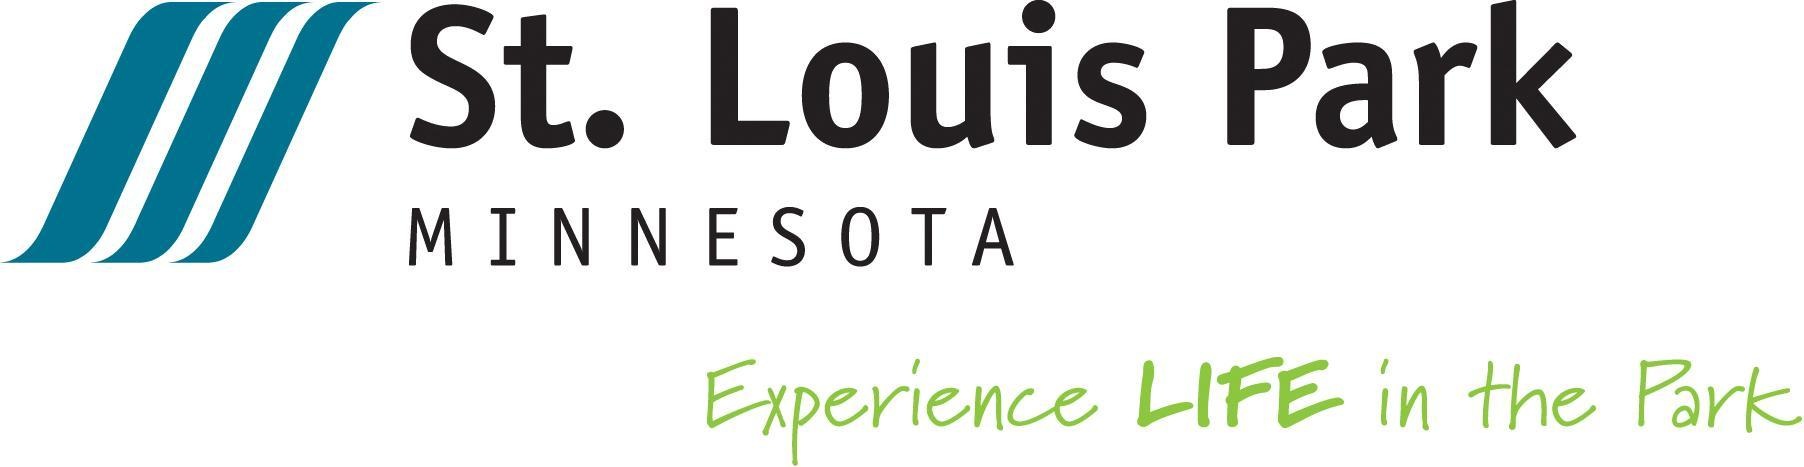 St. Louis Park city logo